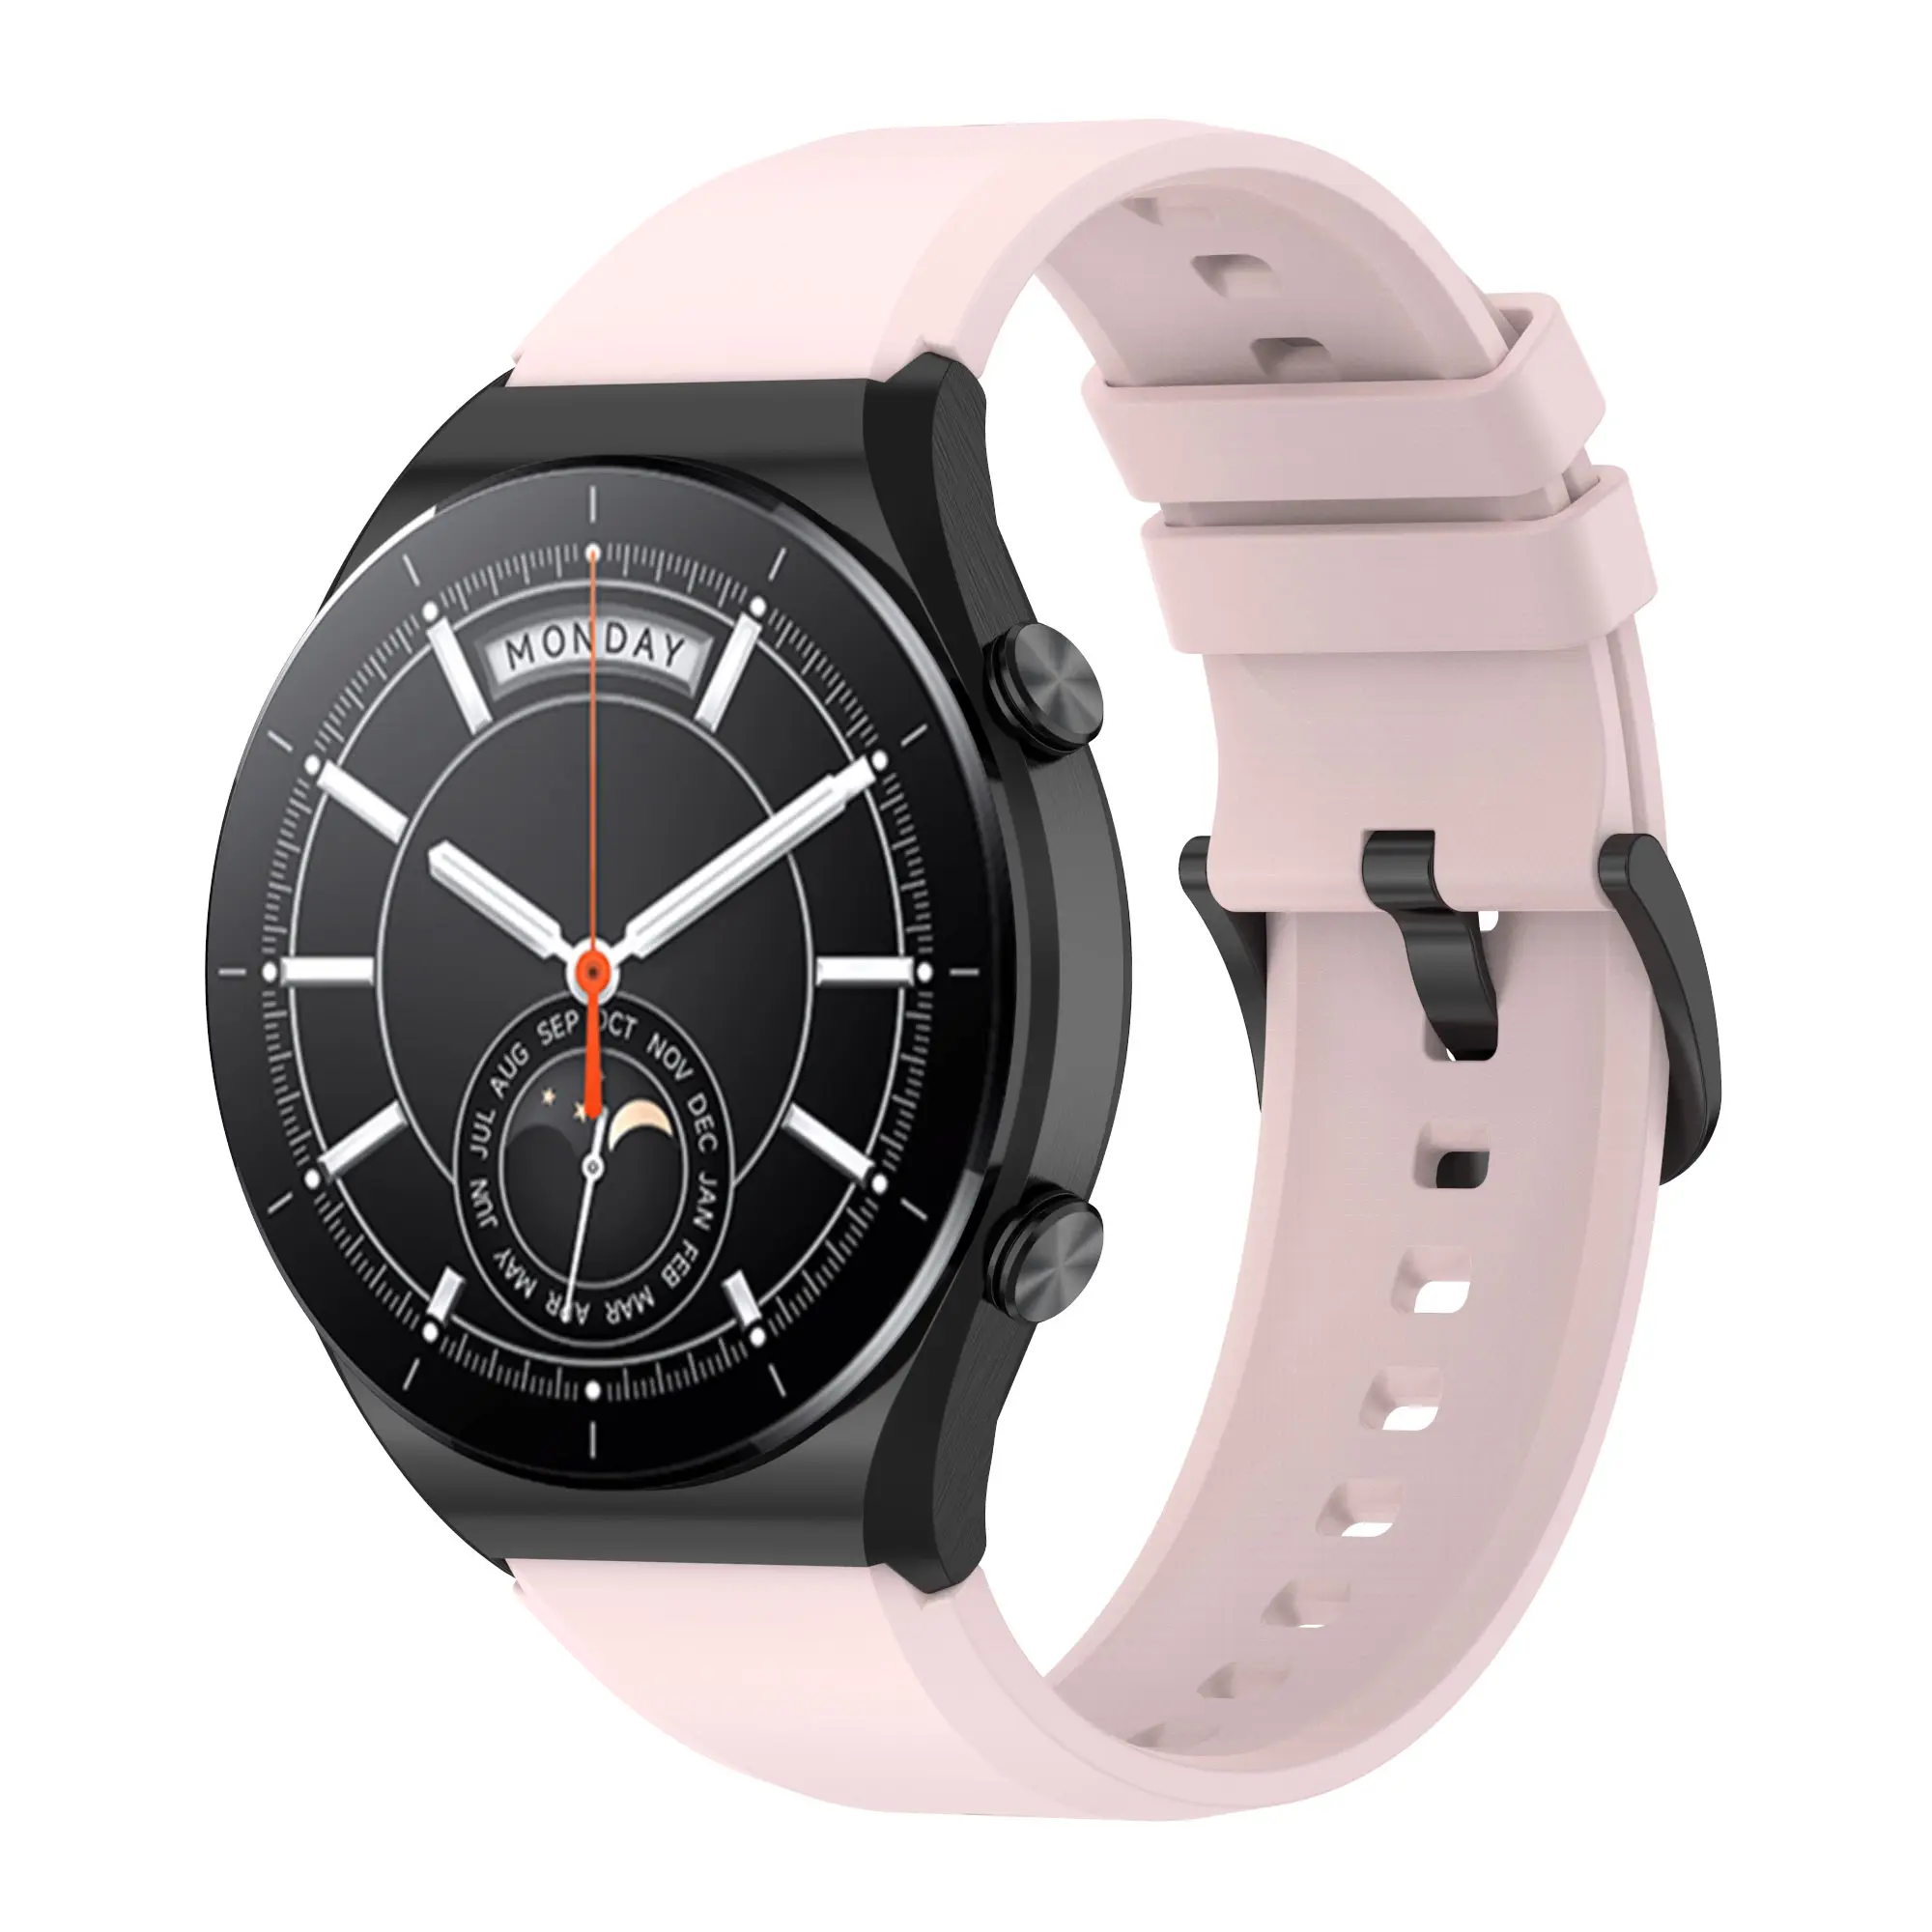 Eraysun 22mm Offical Silicone Protruding Head Bright Face Ersetzen Sie die Armbänder für Xiaomi Watch S1 Edition Band Uhren armbänder Correa